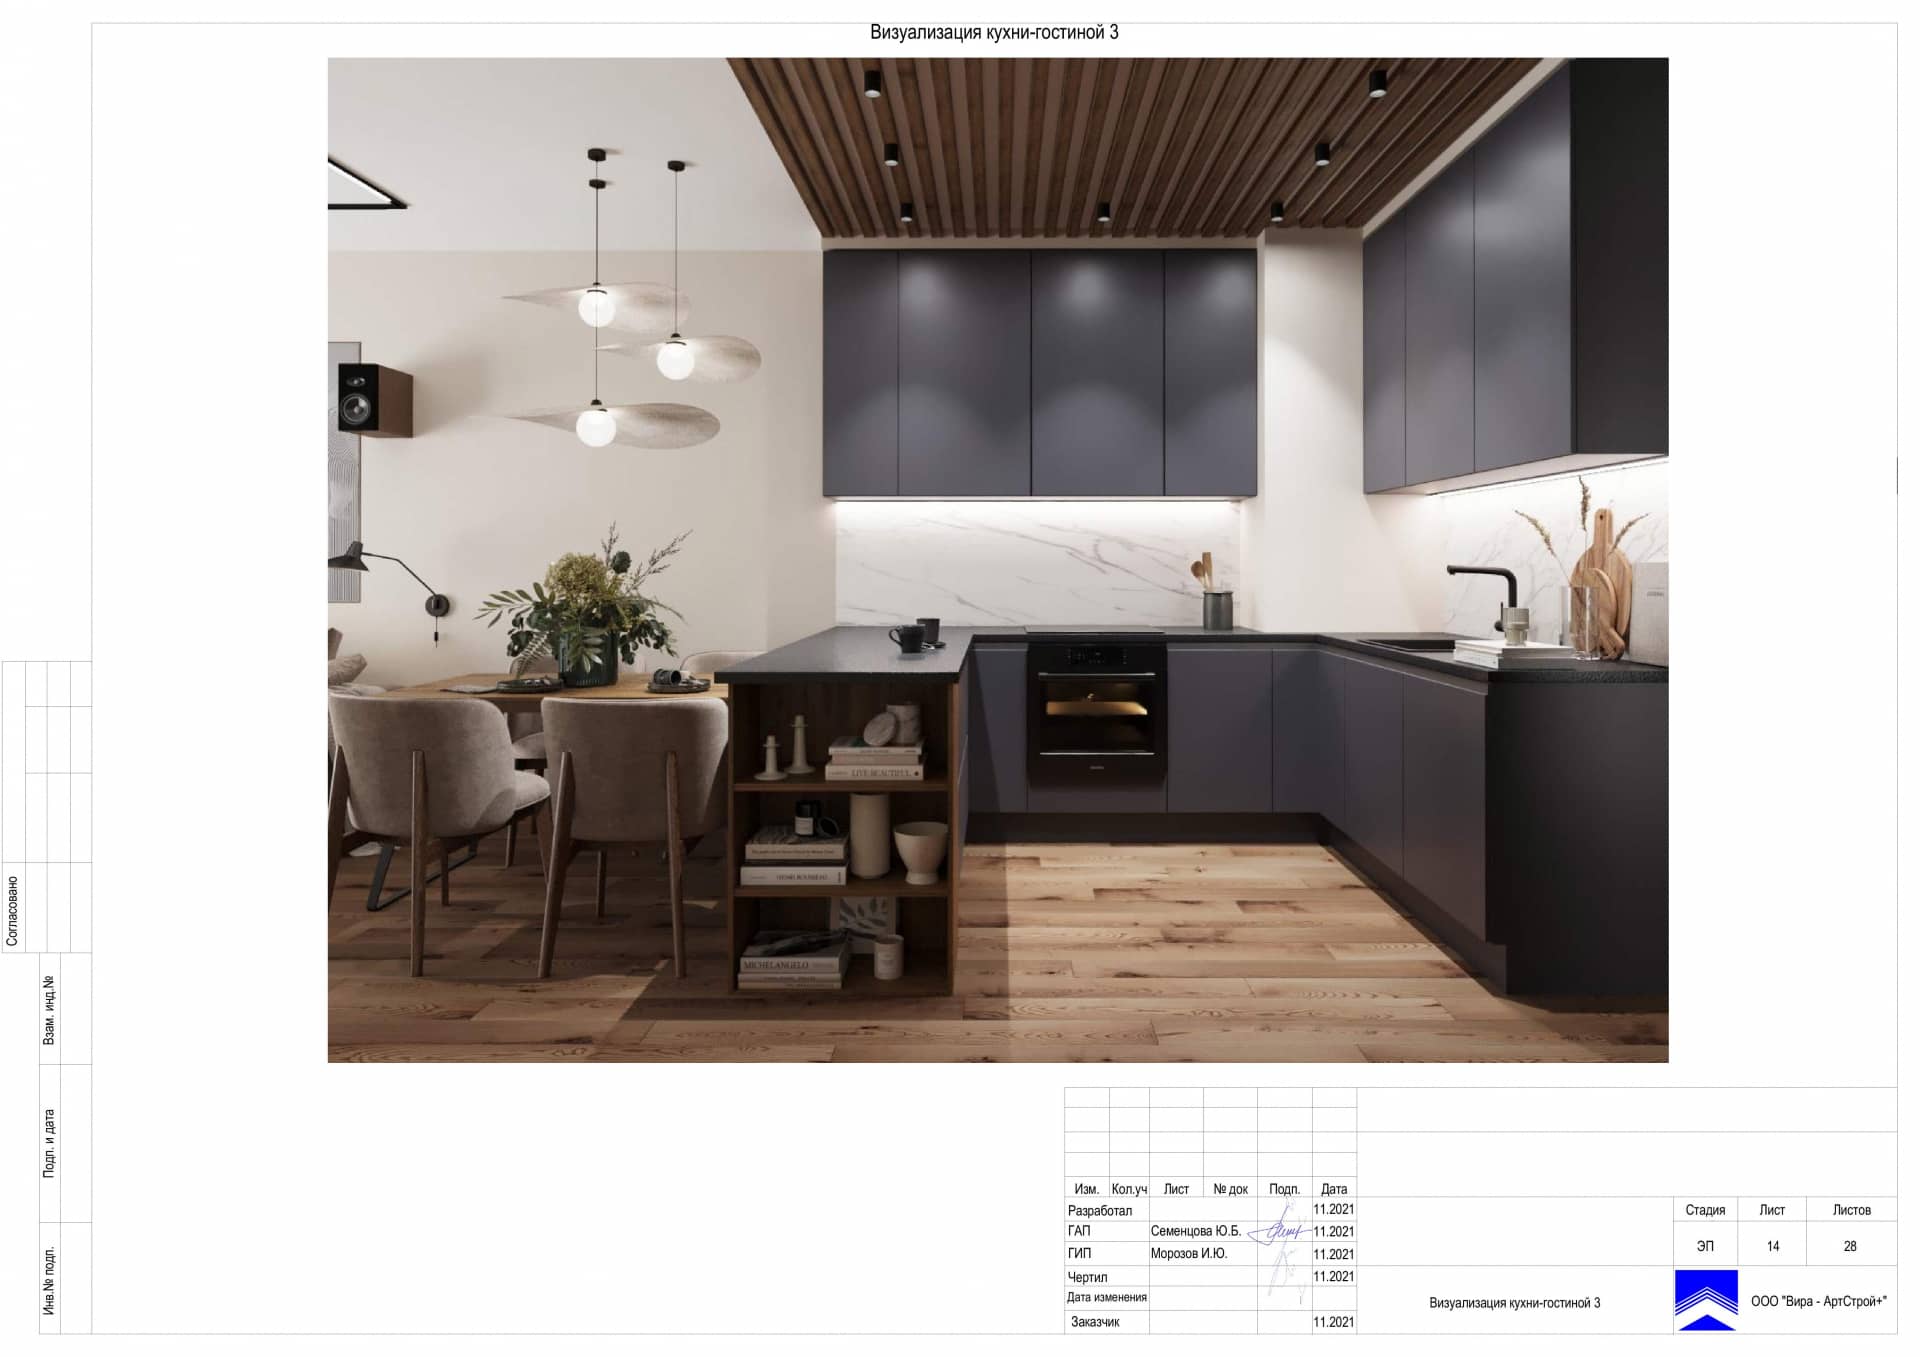 Визуализация кухни гостинной 3, квартира 100 м² в ЖК «Джаз»